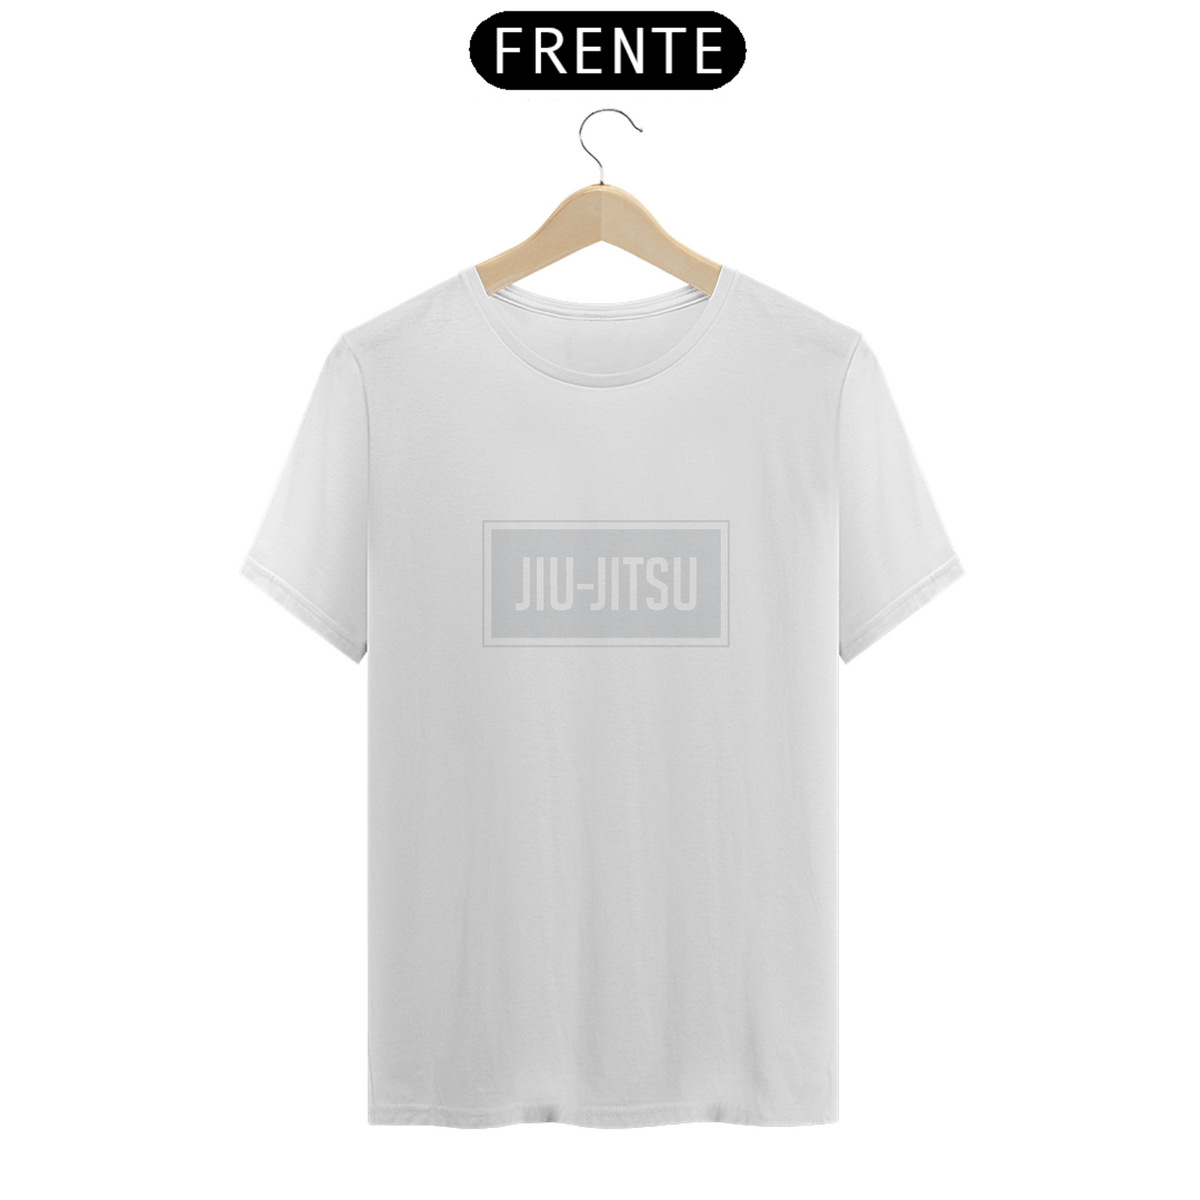 Nome do produto: Camisa Masculina - JITSU - SIMPLESMENTE JIUJITSU